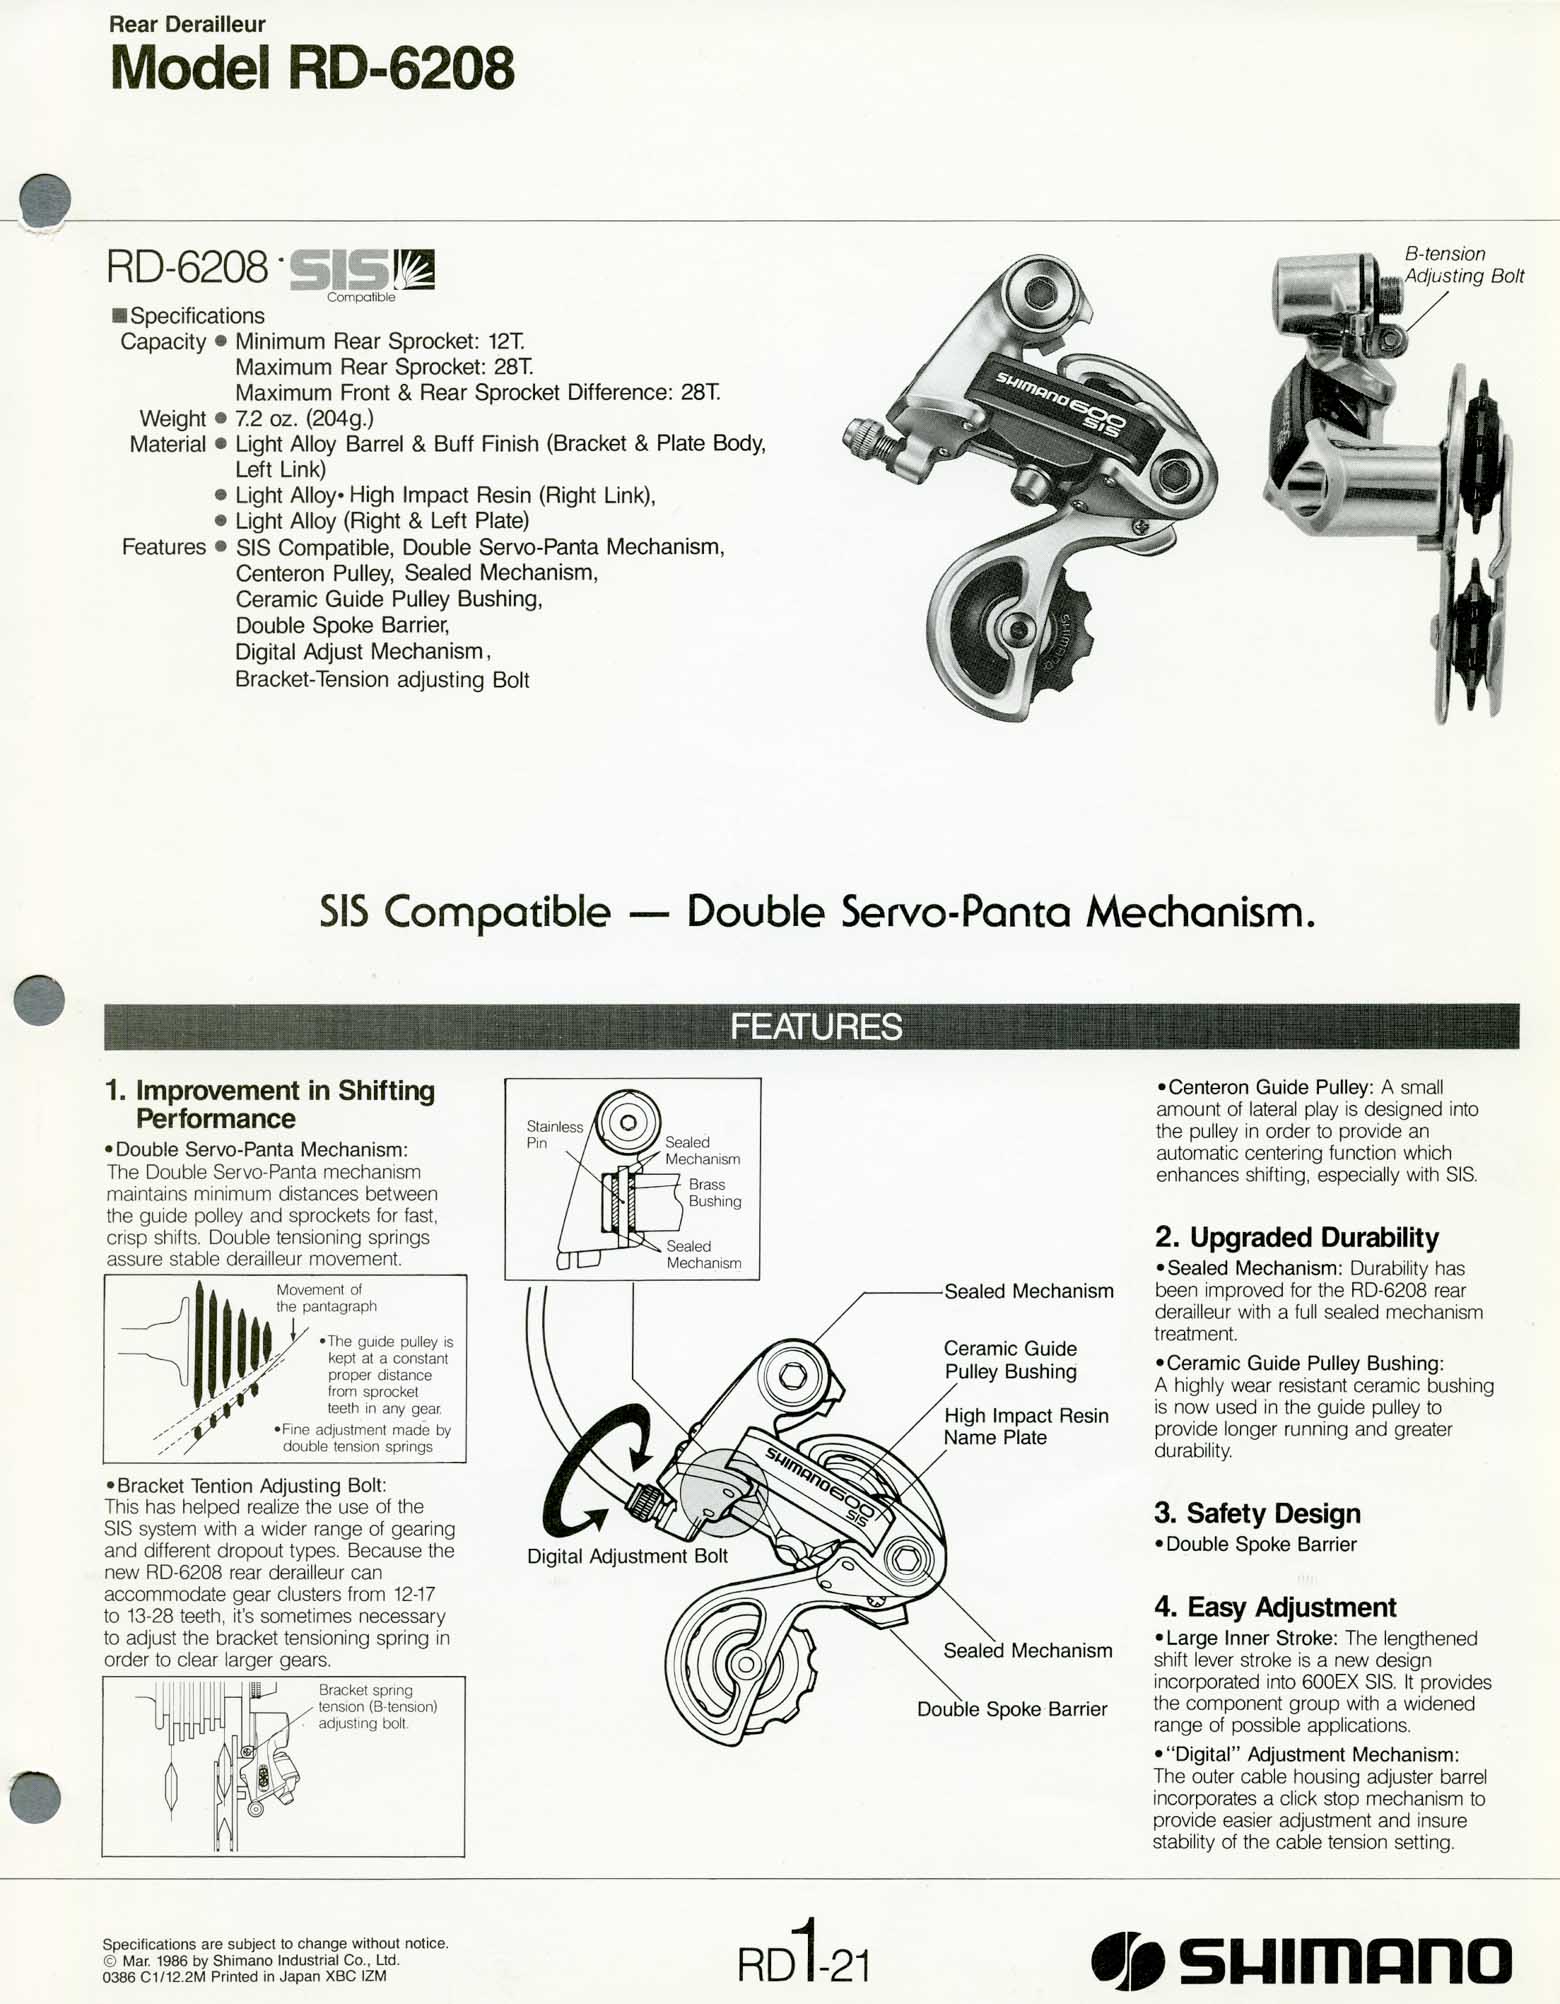 Shimano Bicycle Parts - 1986 scan 01 main image